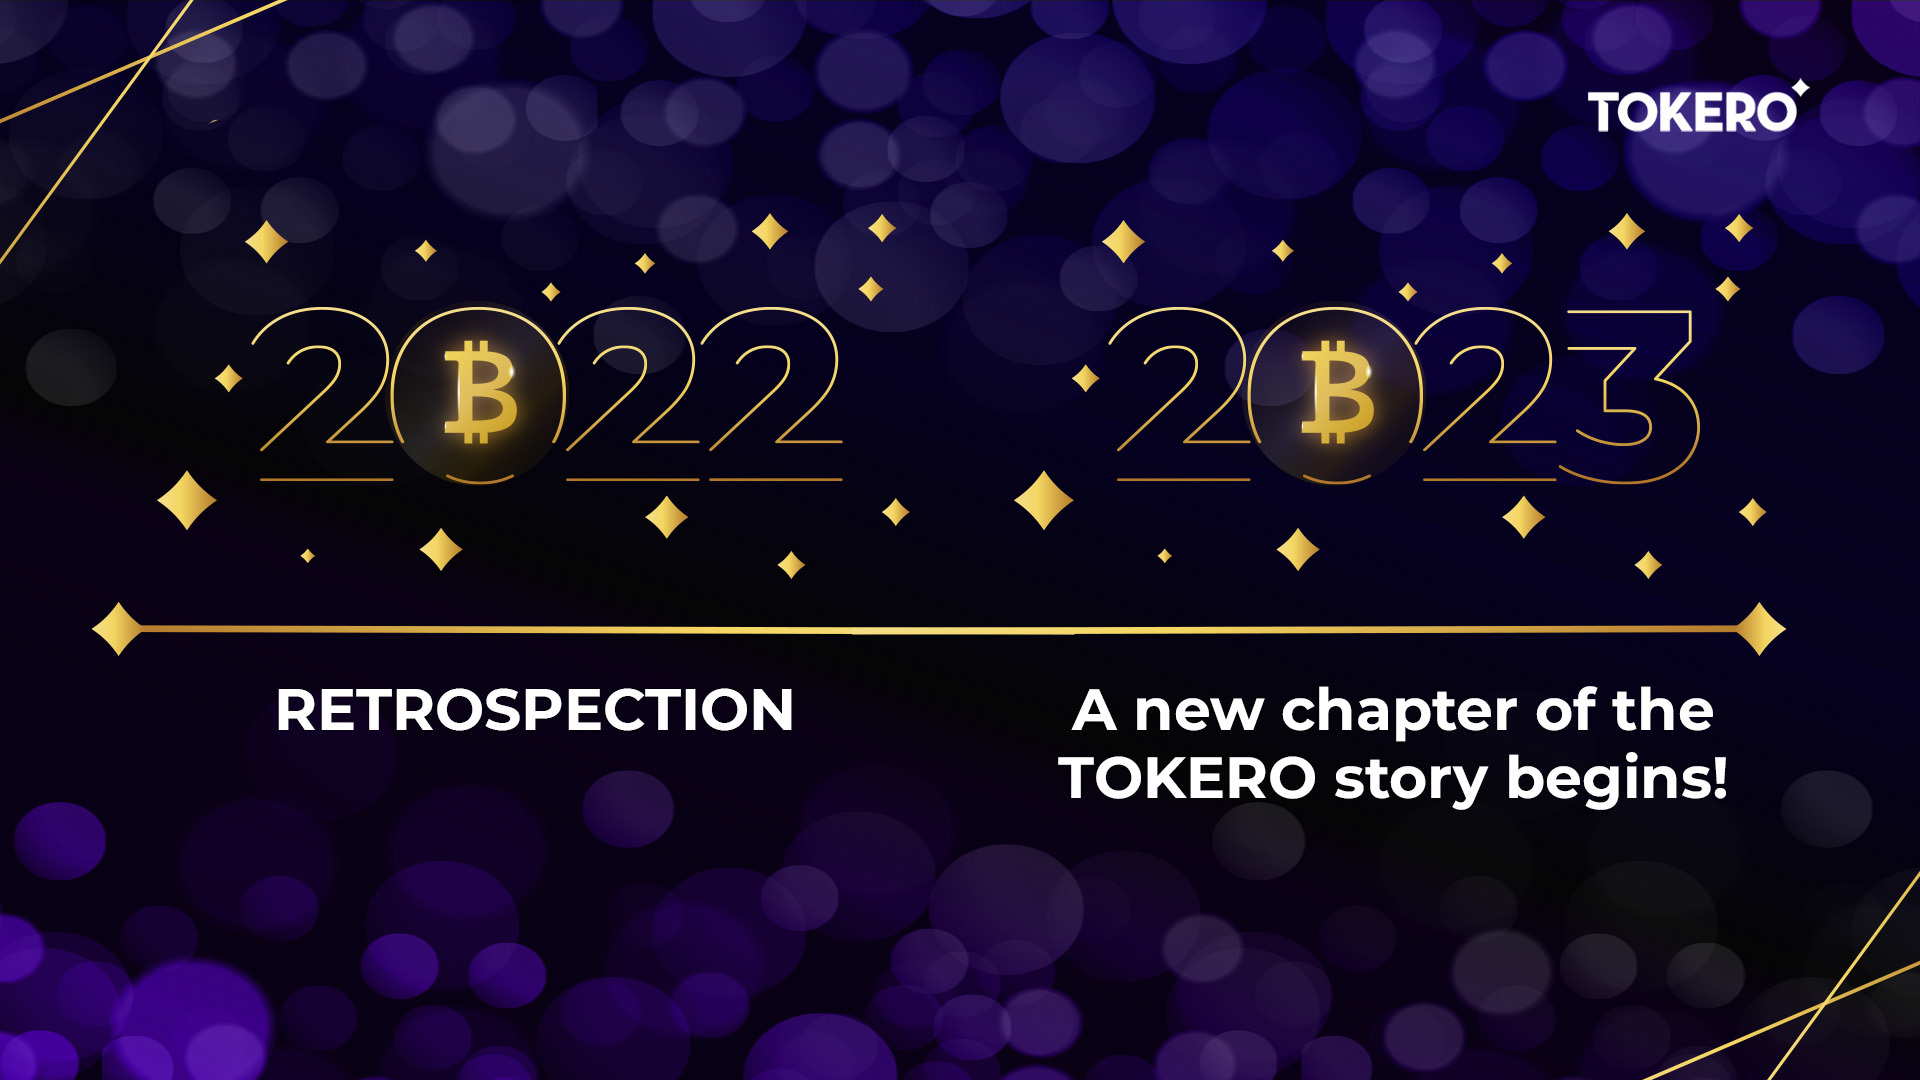 TOKERO 2022 achievements